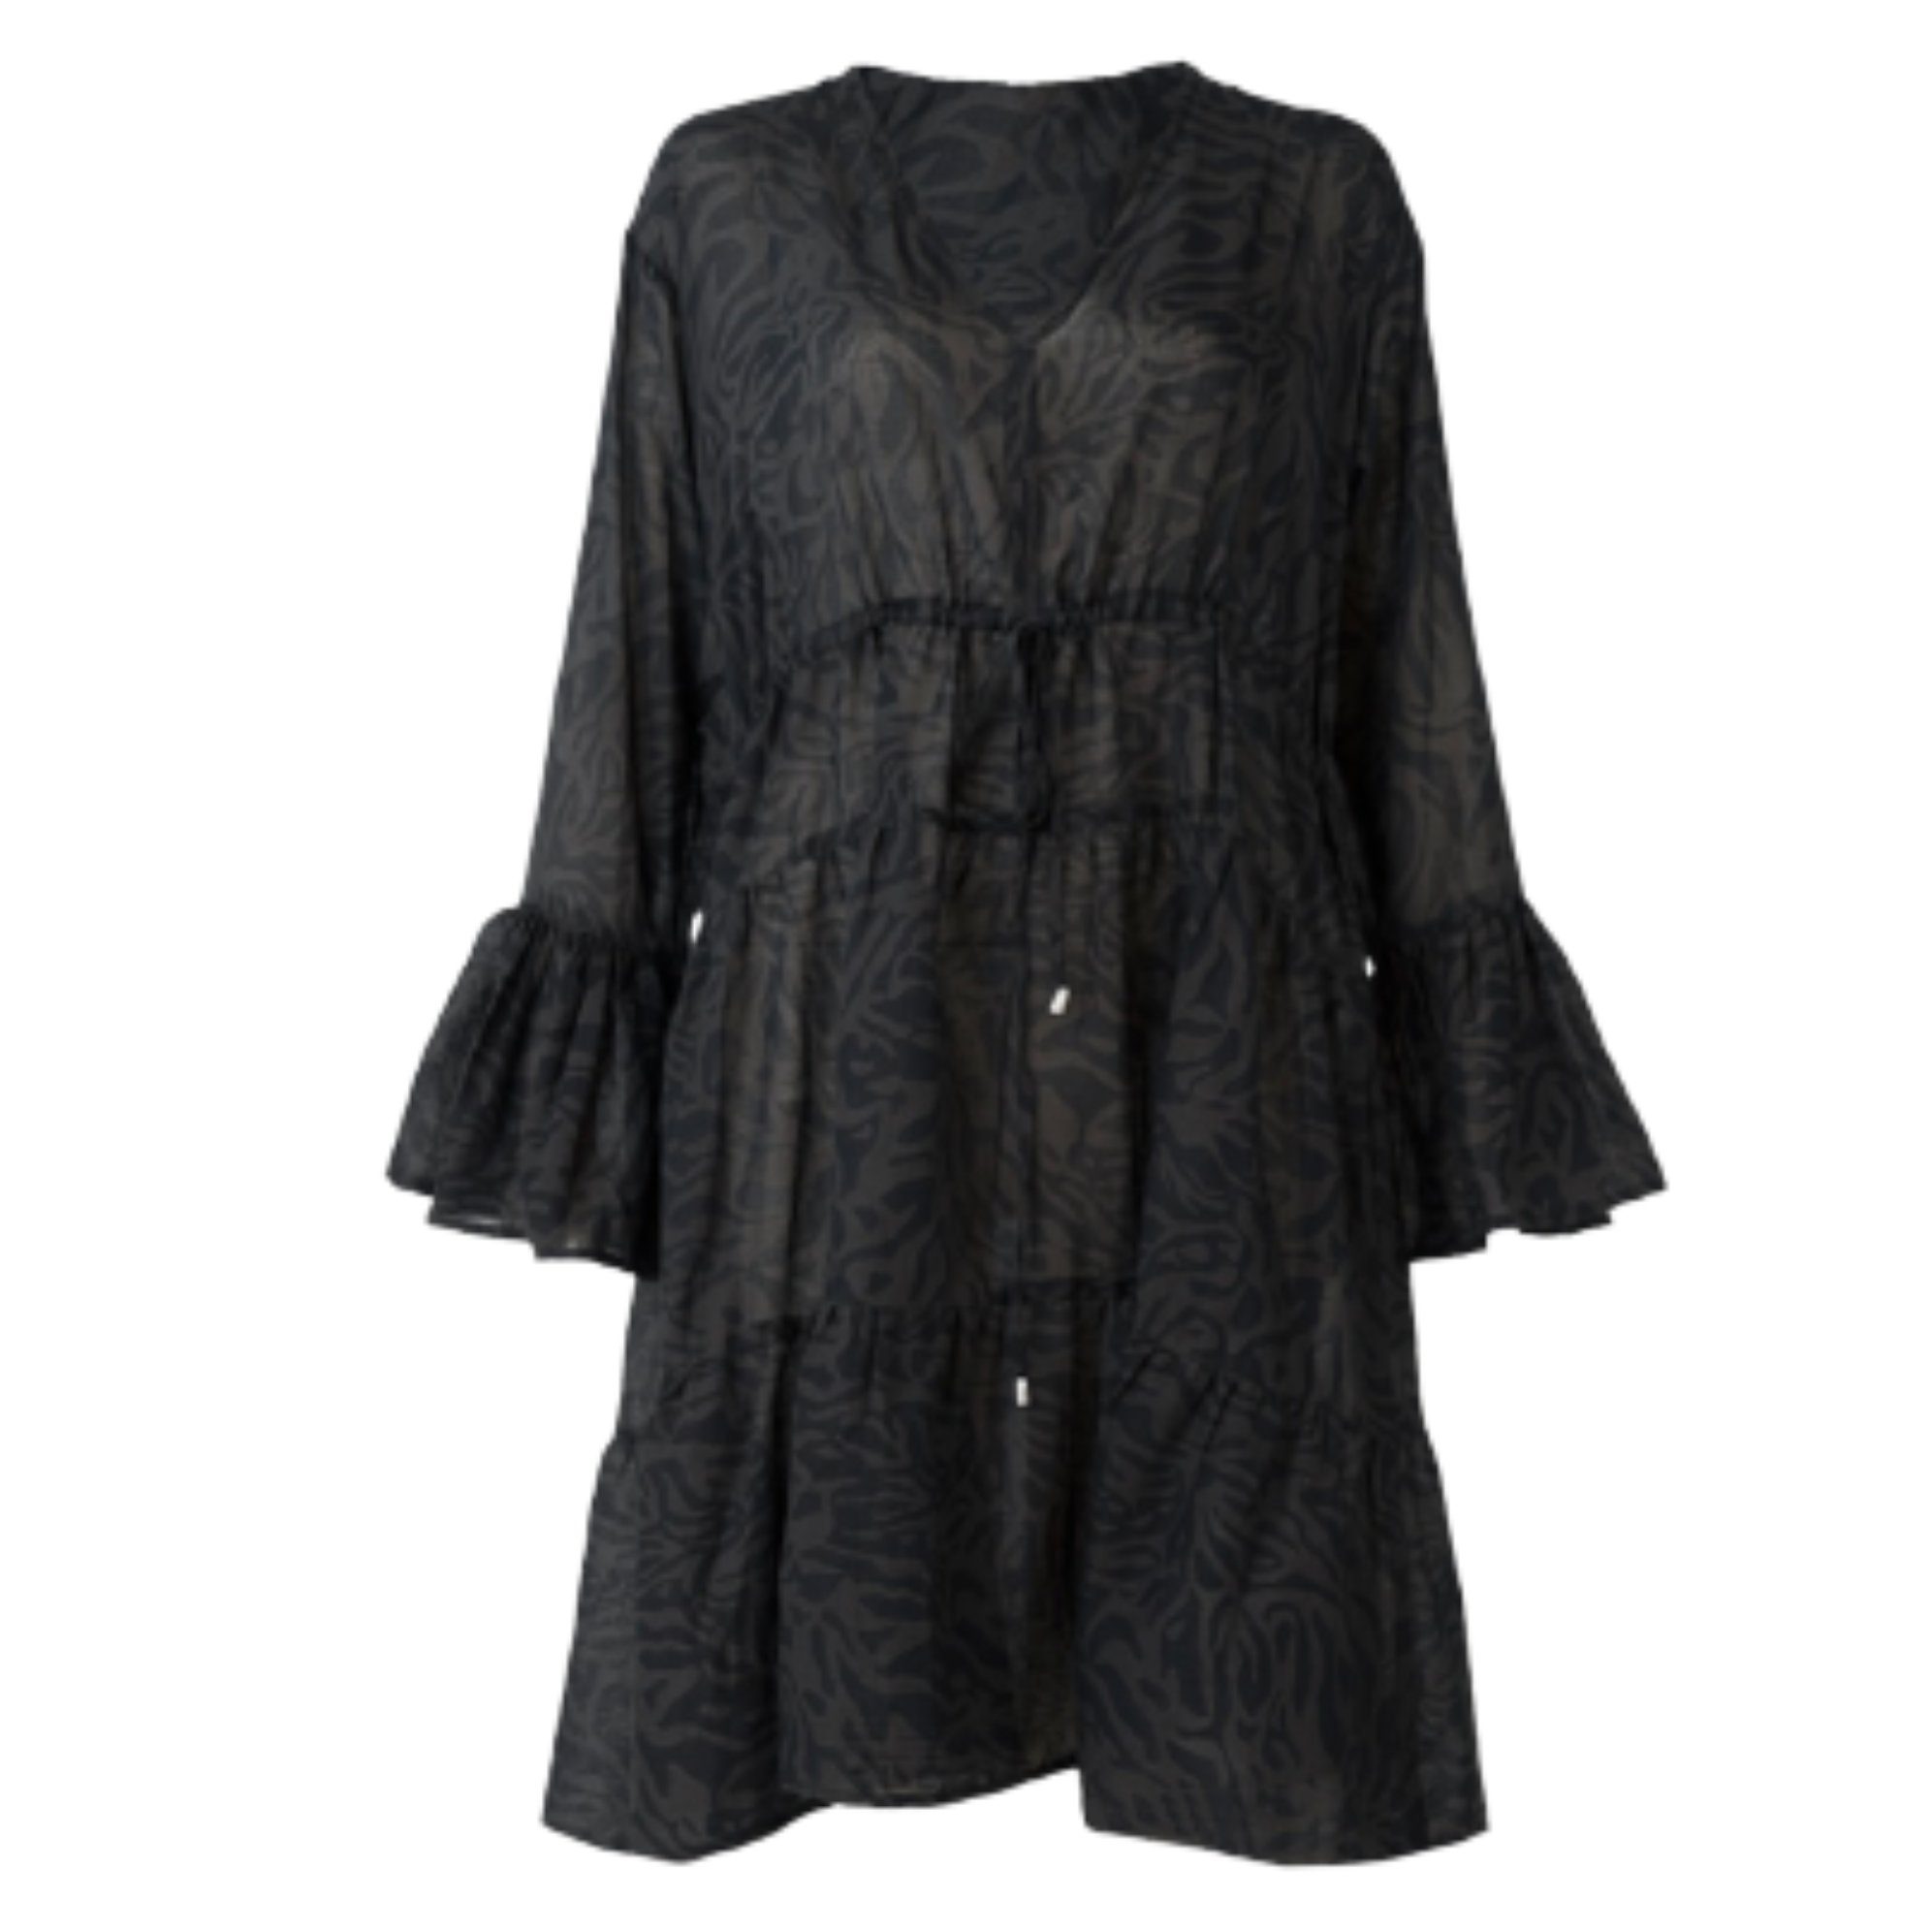 Barts Sommerkleid Kleid Pacificon Damen Sommerkleid in black, champagne oder sand Alloverdruck